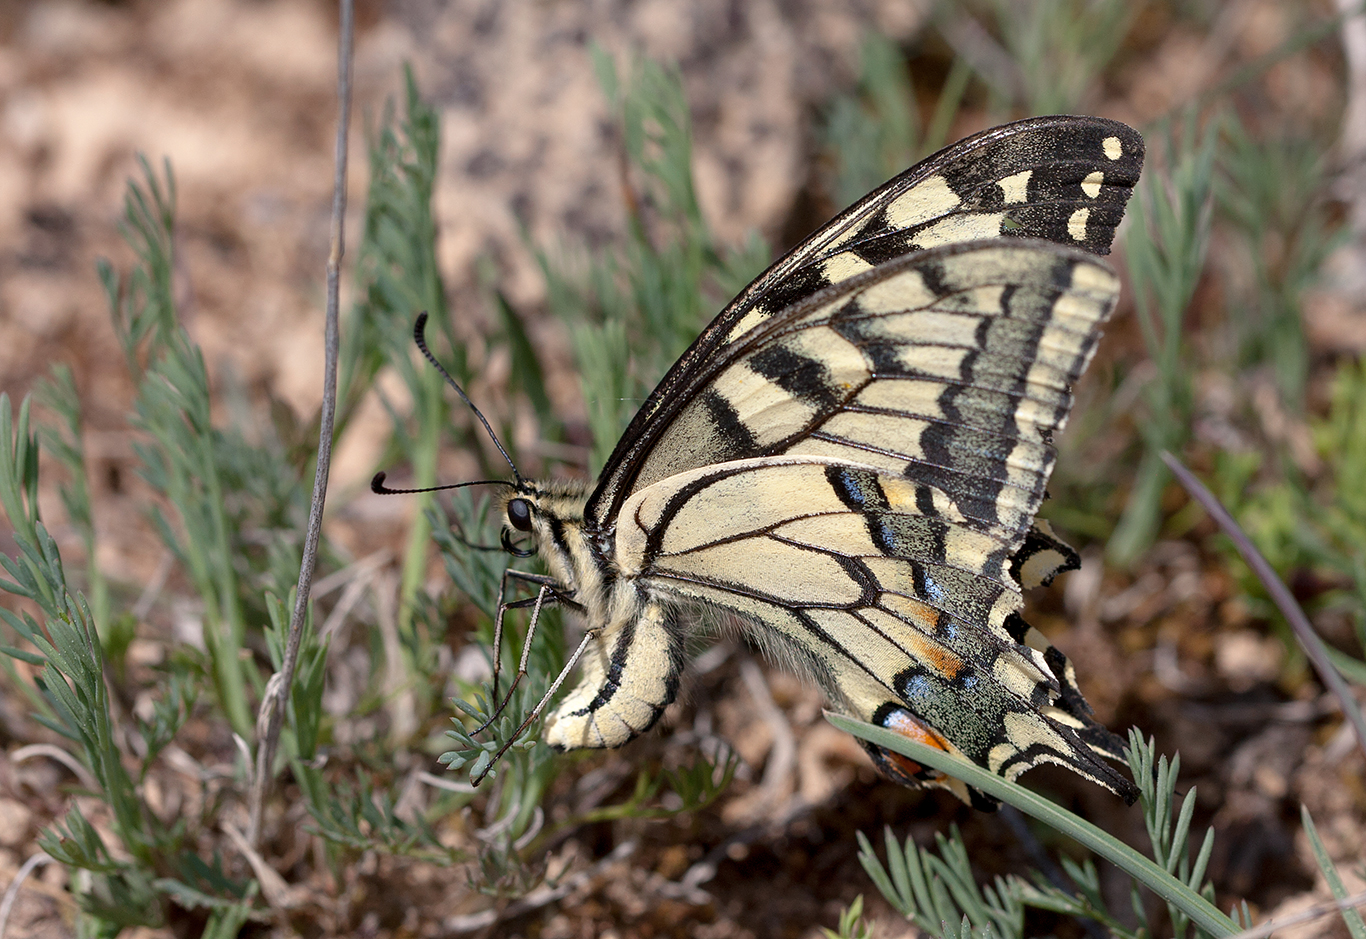 Hembra de Mariposa Macaon (Papilio machaon) realizando la puesta de un único huevo por planta sobre una de sus plantas nutricias Ruda (Ruta sp.).